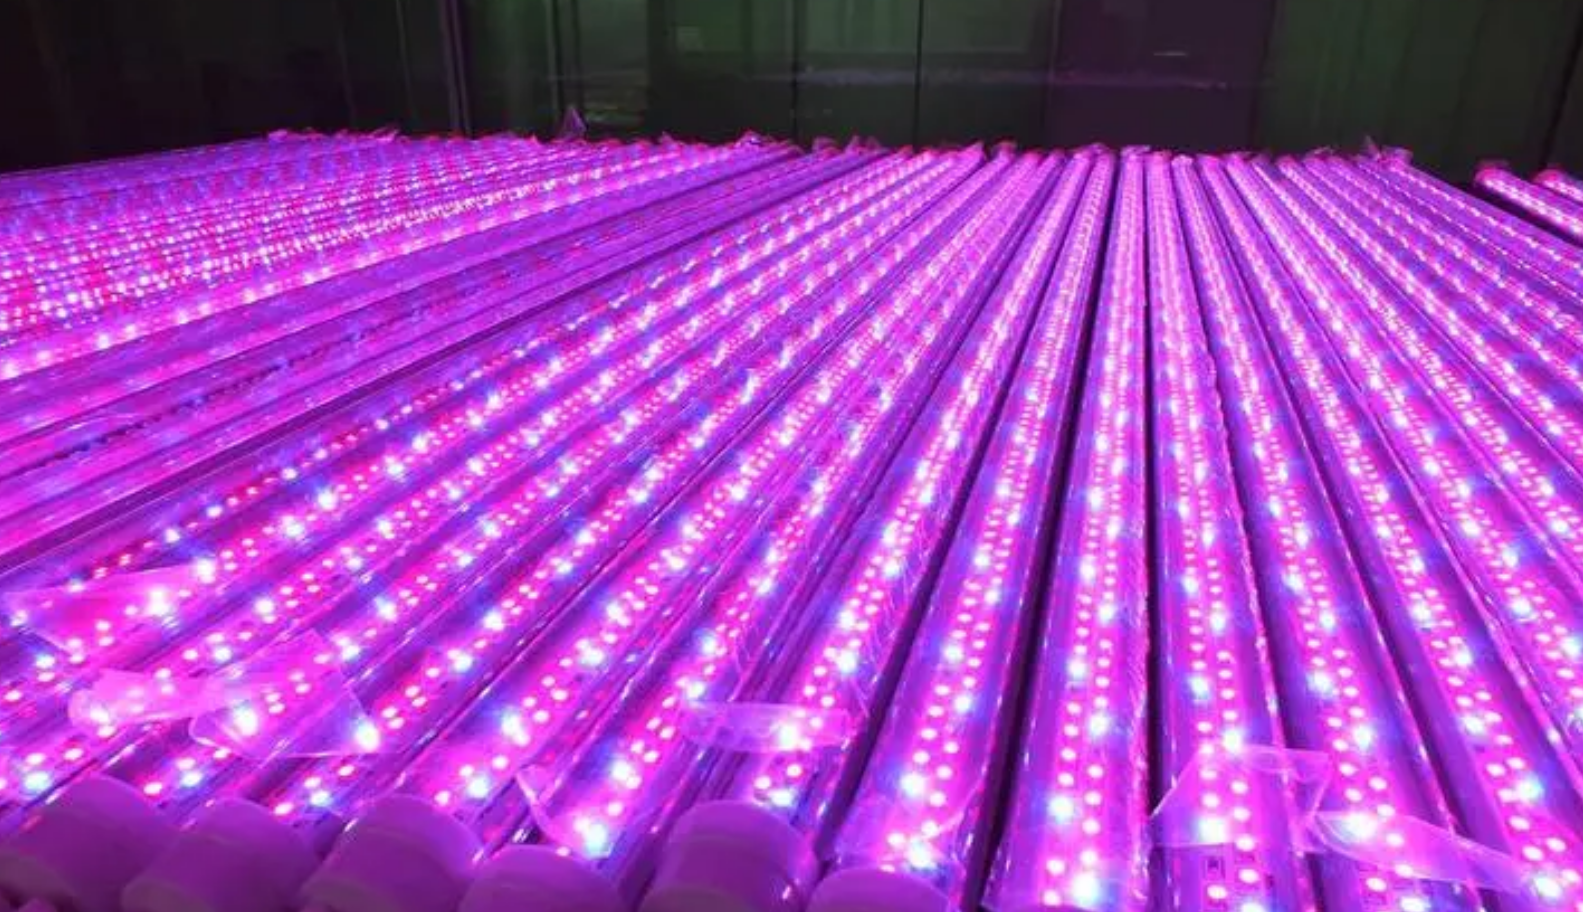 2023లో చైనా యొక్క LED ప్లాంట్ లైటింగ్ పరిశ్రమ యొక్క మార్కెట్ విశ్లేషణ